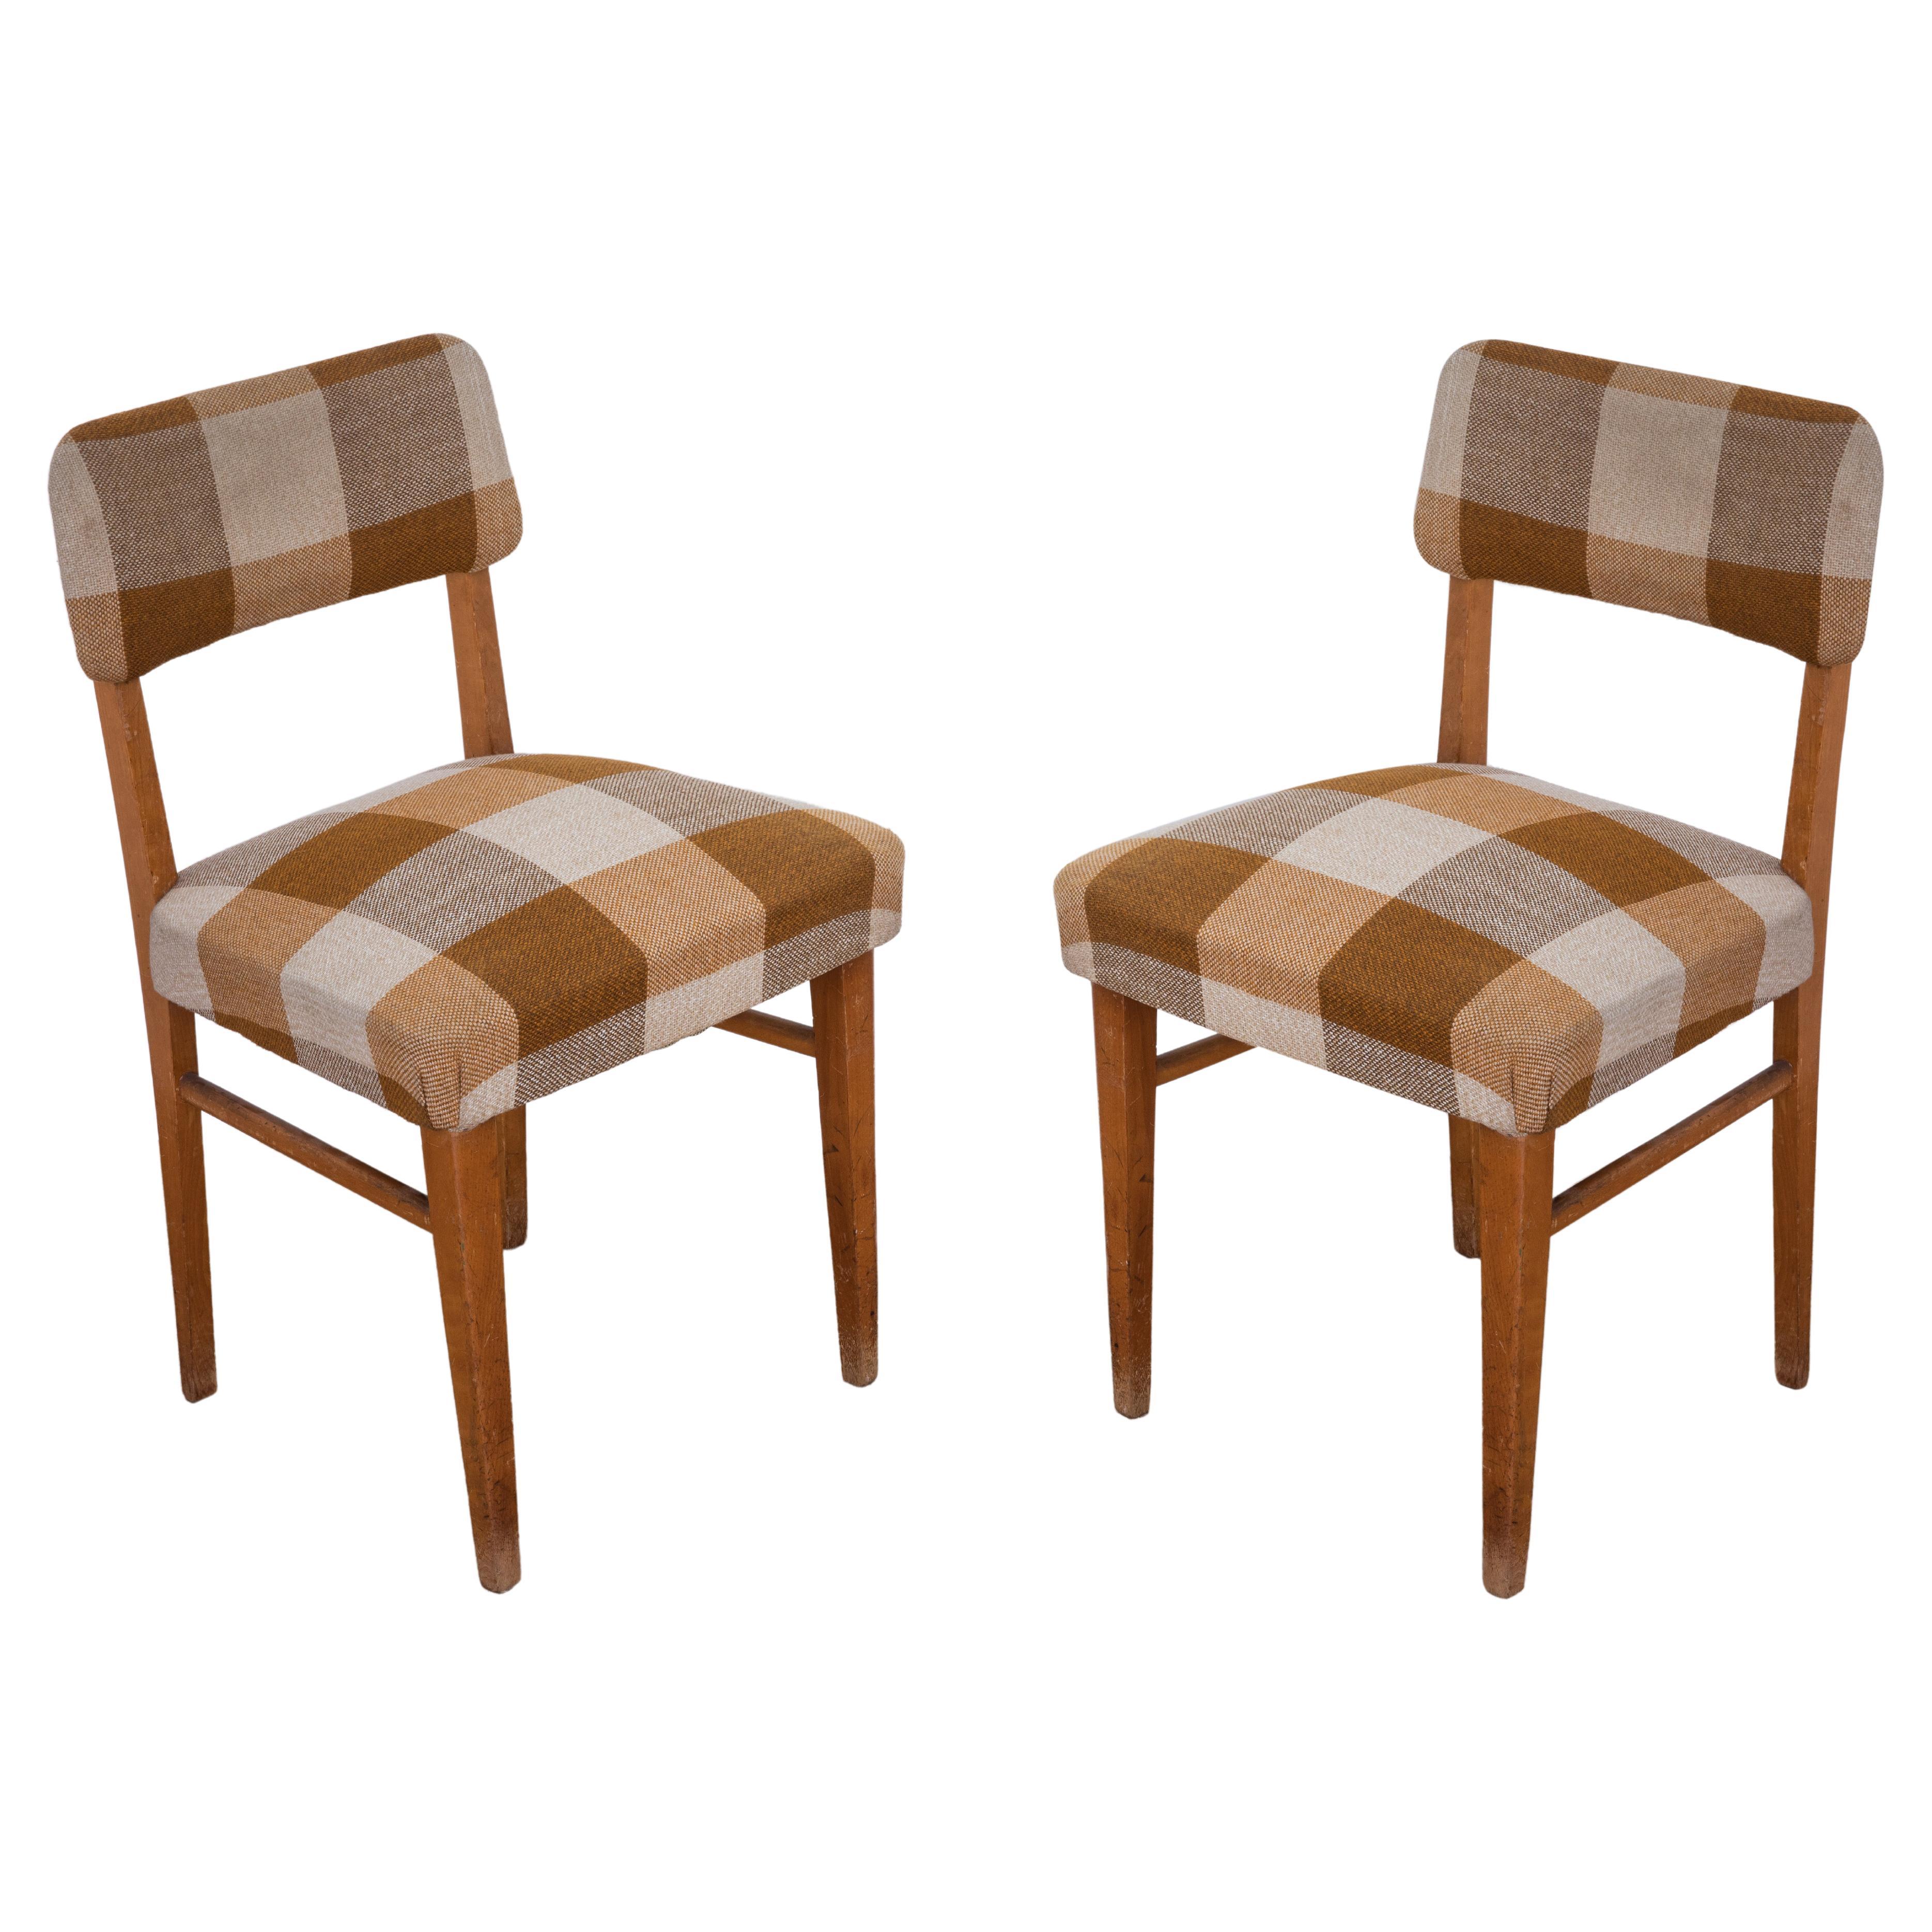 Paire de chaises originales des années 1950 avec structure en bois et assise recouvertes de tissu en vente